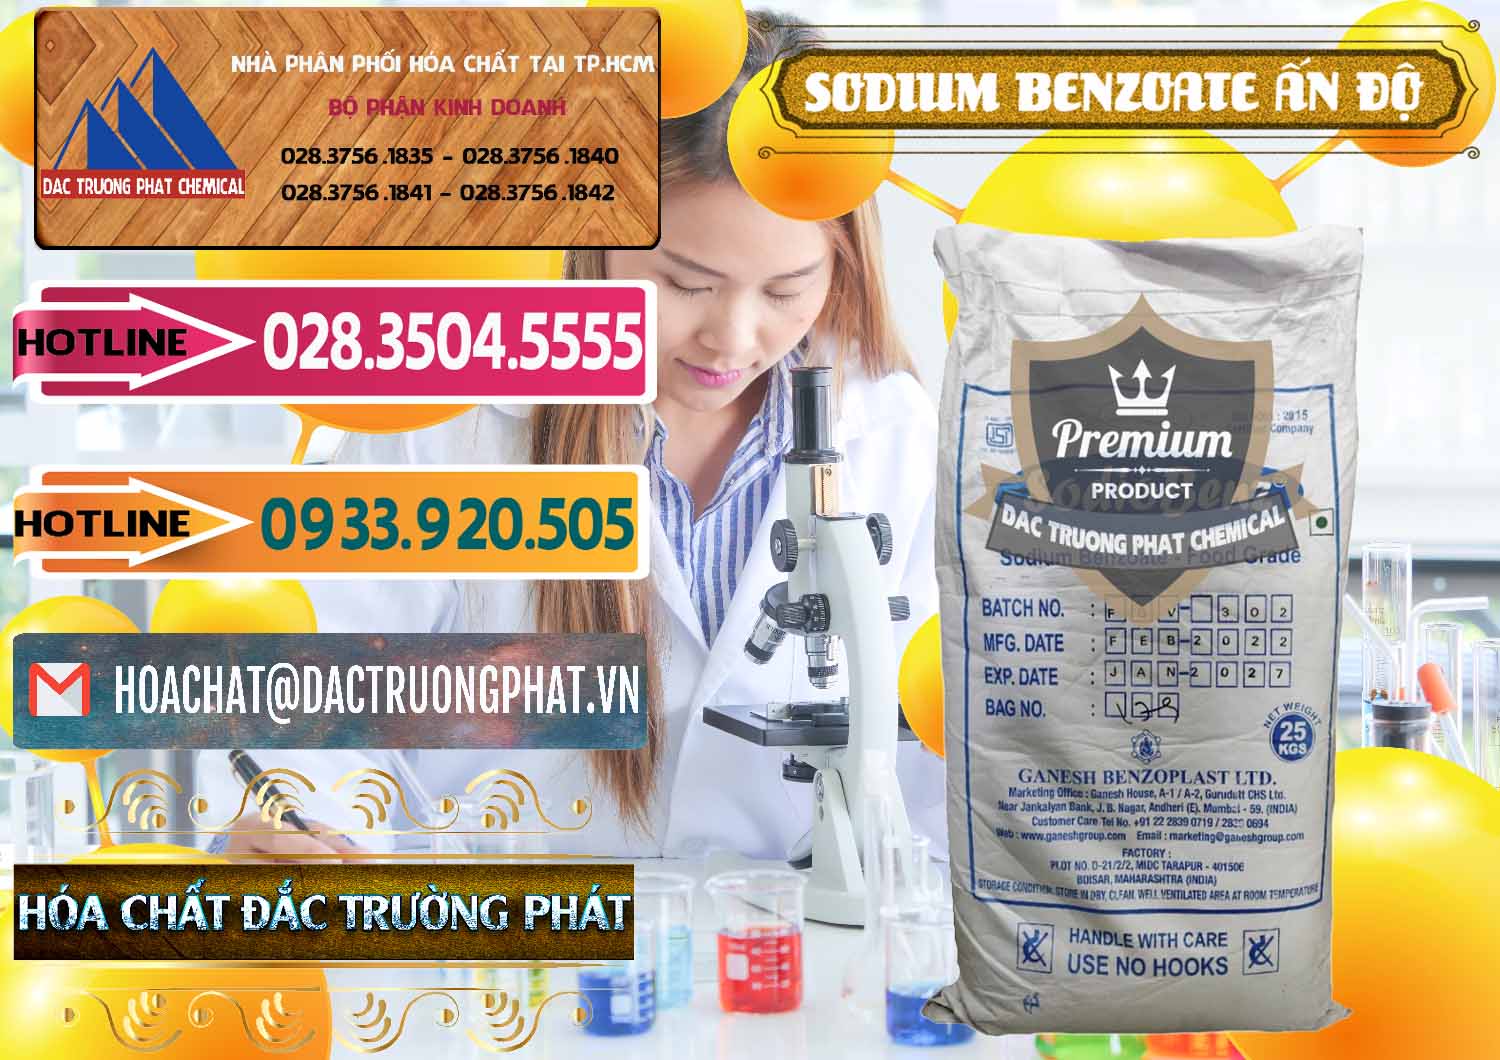 Chuyên cung cấp & bán Sodium Benzoate - Mốc Bột Ấn Độ India - 0361 - Chuyên cung cấp _ nhập khẩu hóa chất tại TP.HCM - dactruongphat.vn